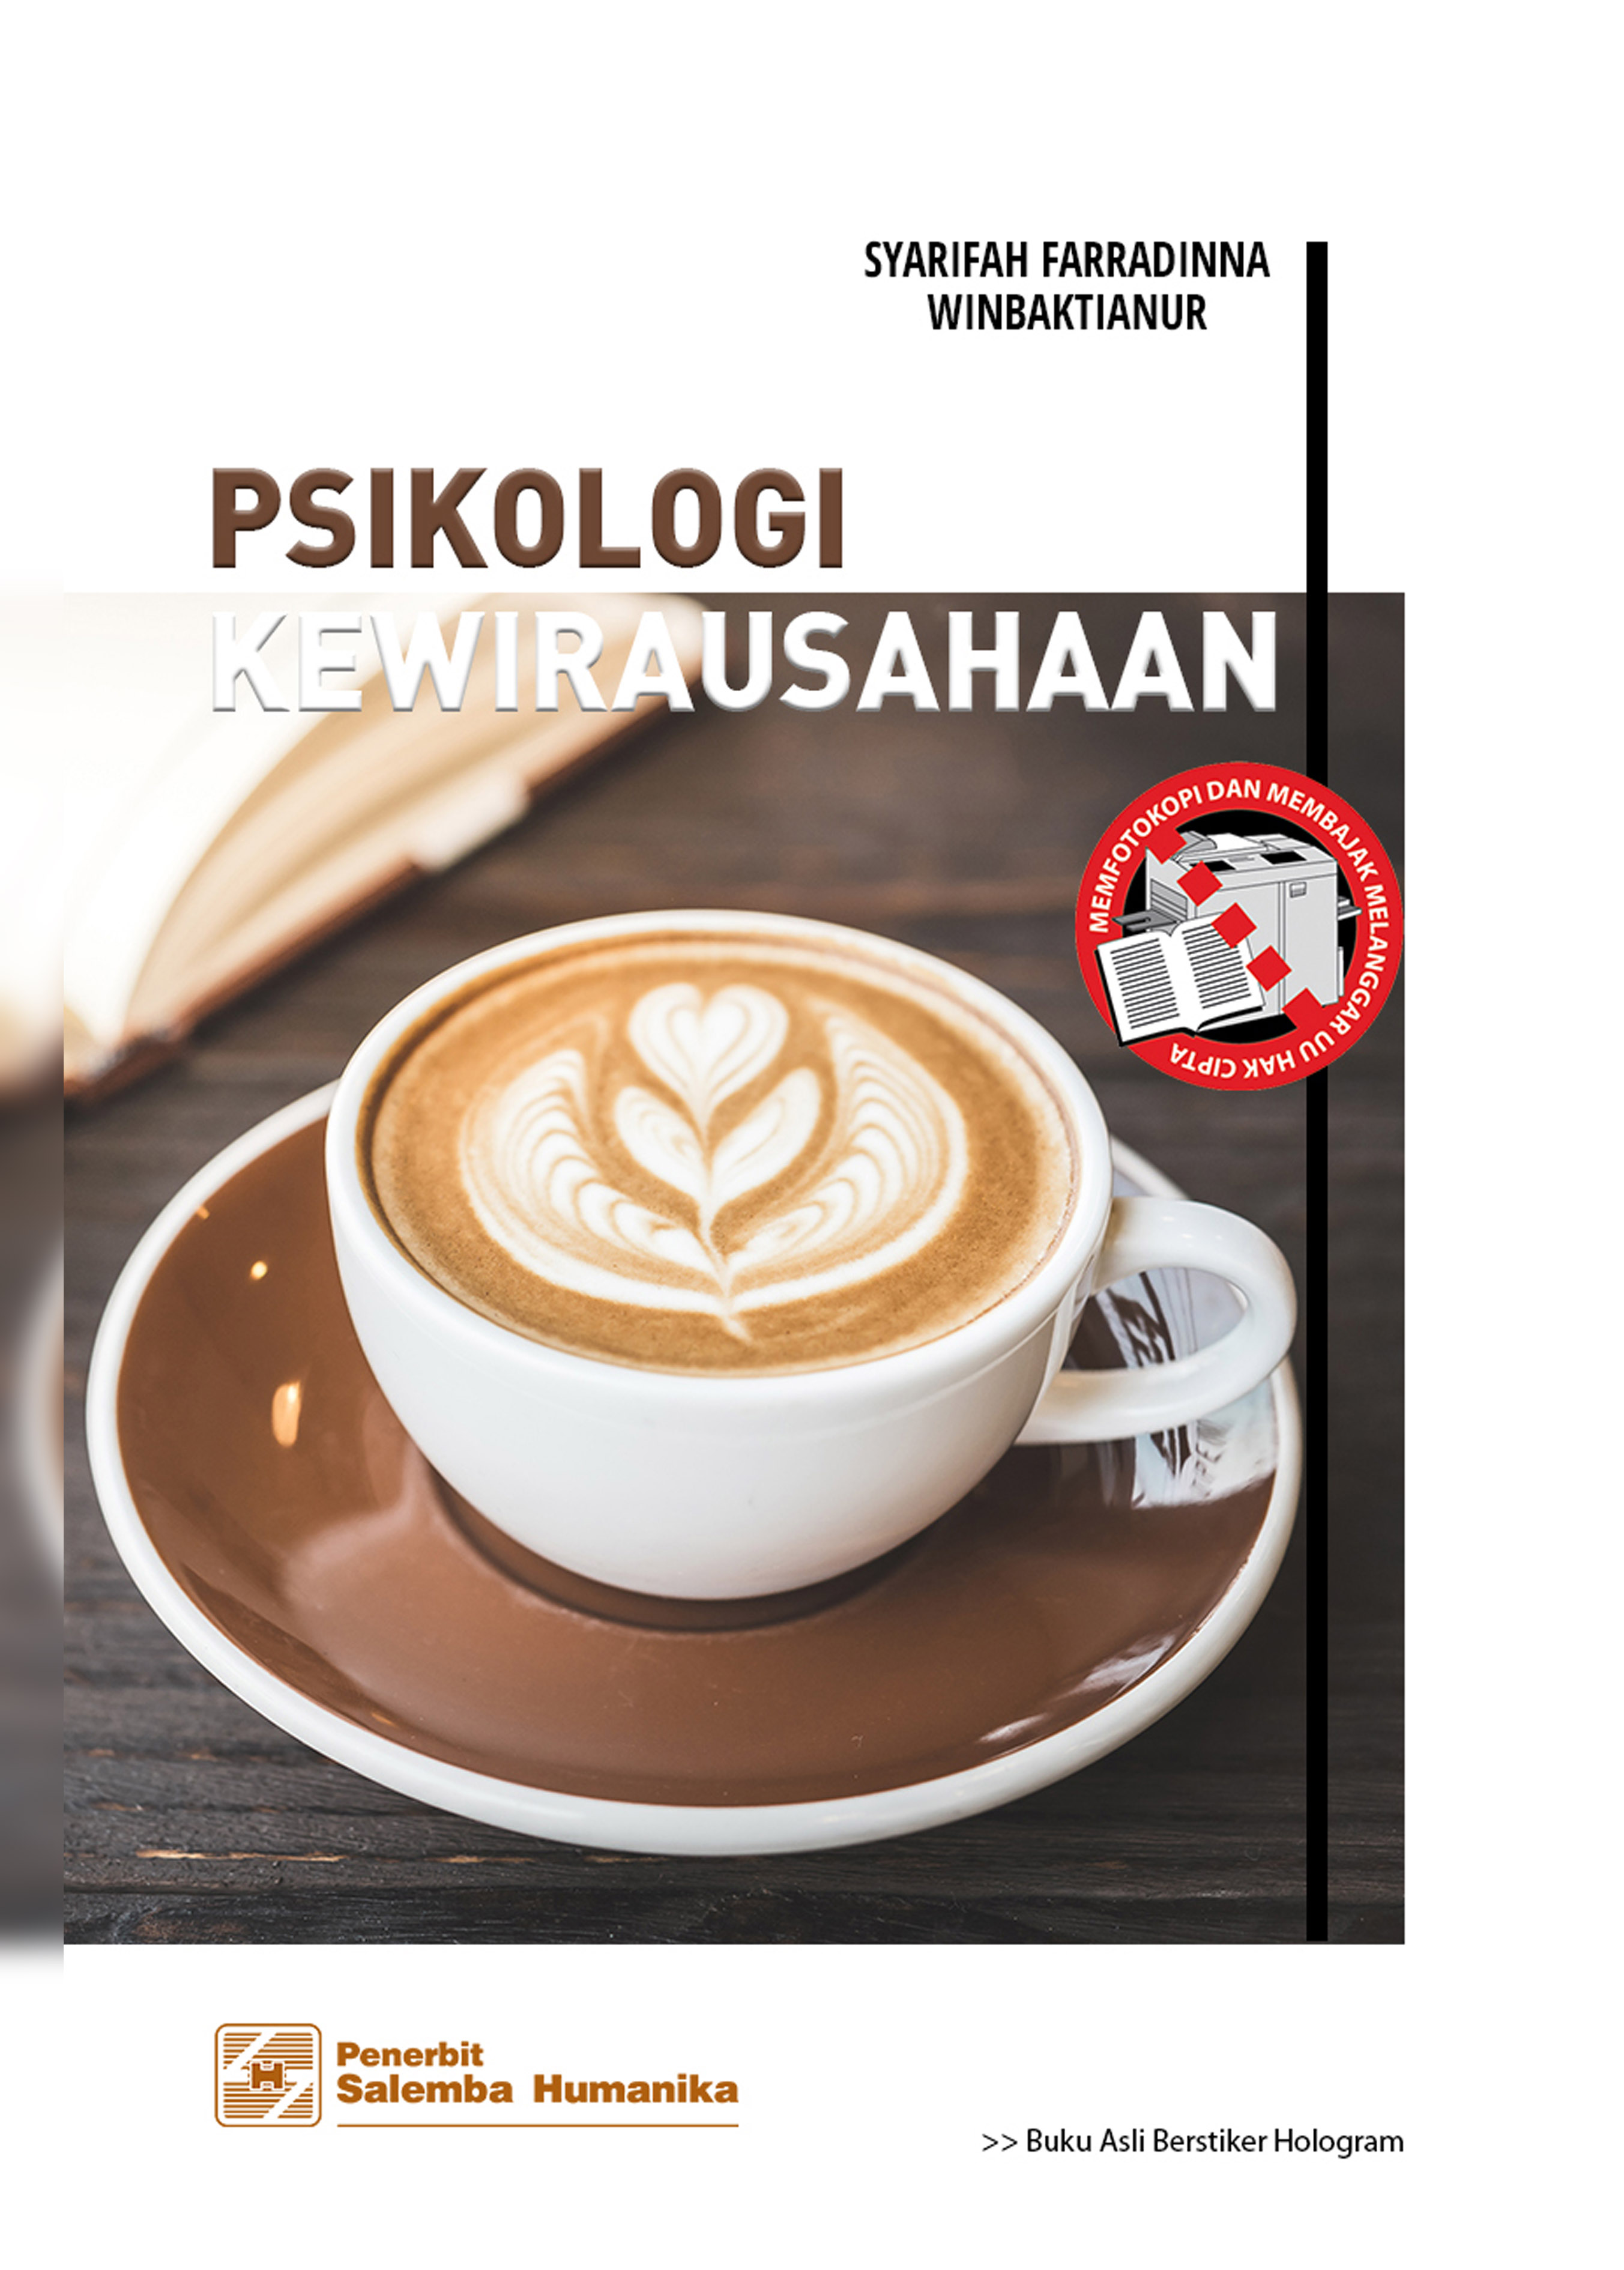 Psikologi Kewirausahaan/Syarifah Farradinna, Winbaktianur